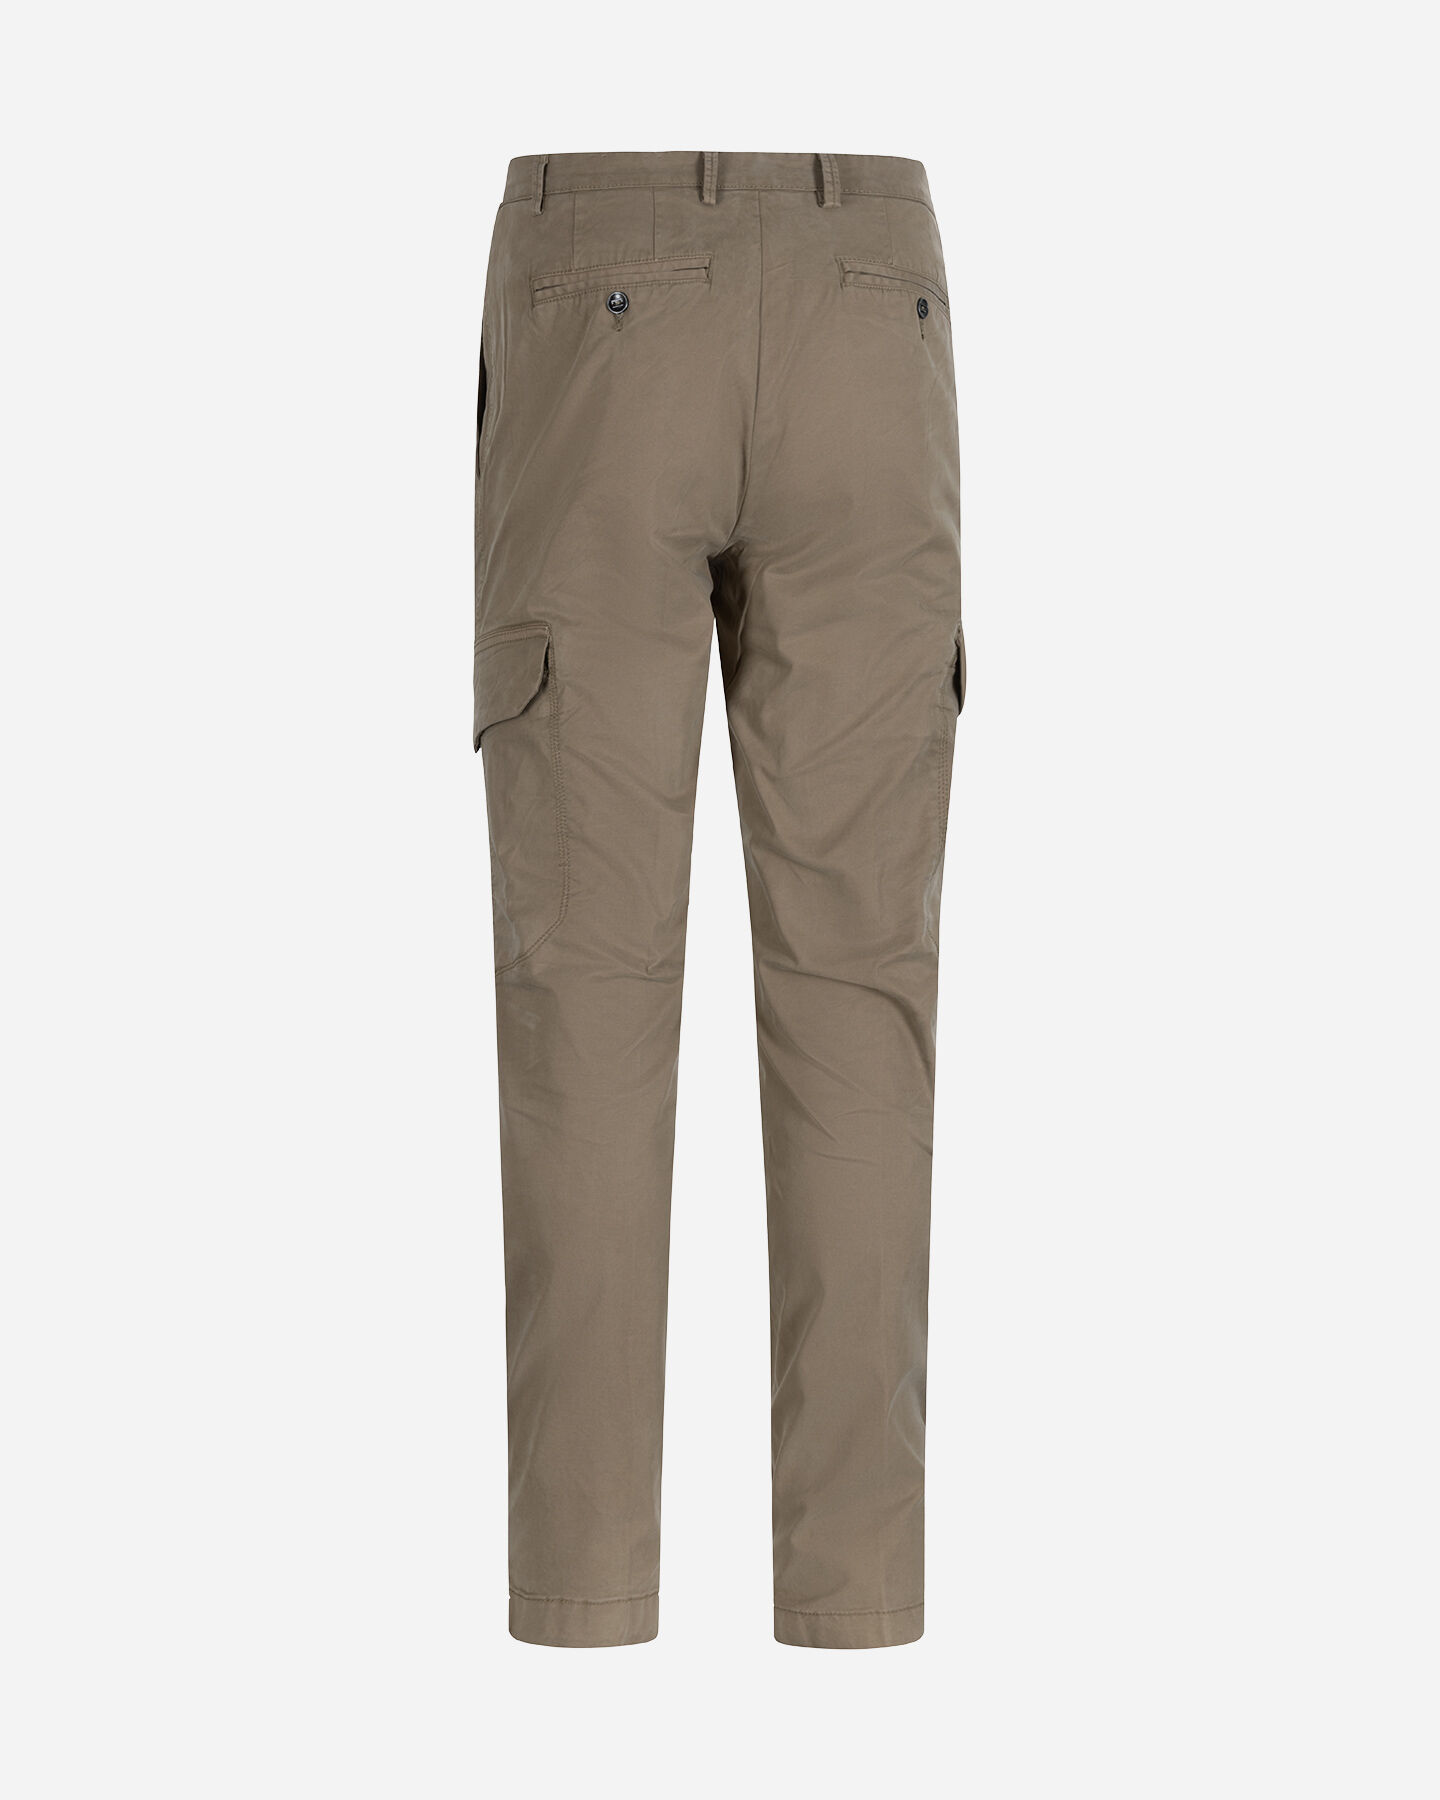  Pantalone BEST COMPANY NAVIGLI M S4127026|831|46 scatto 5